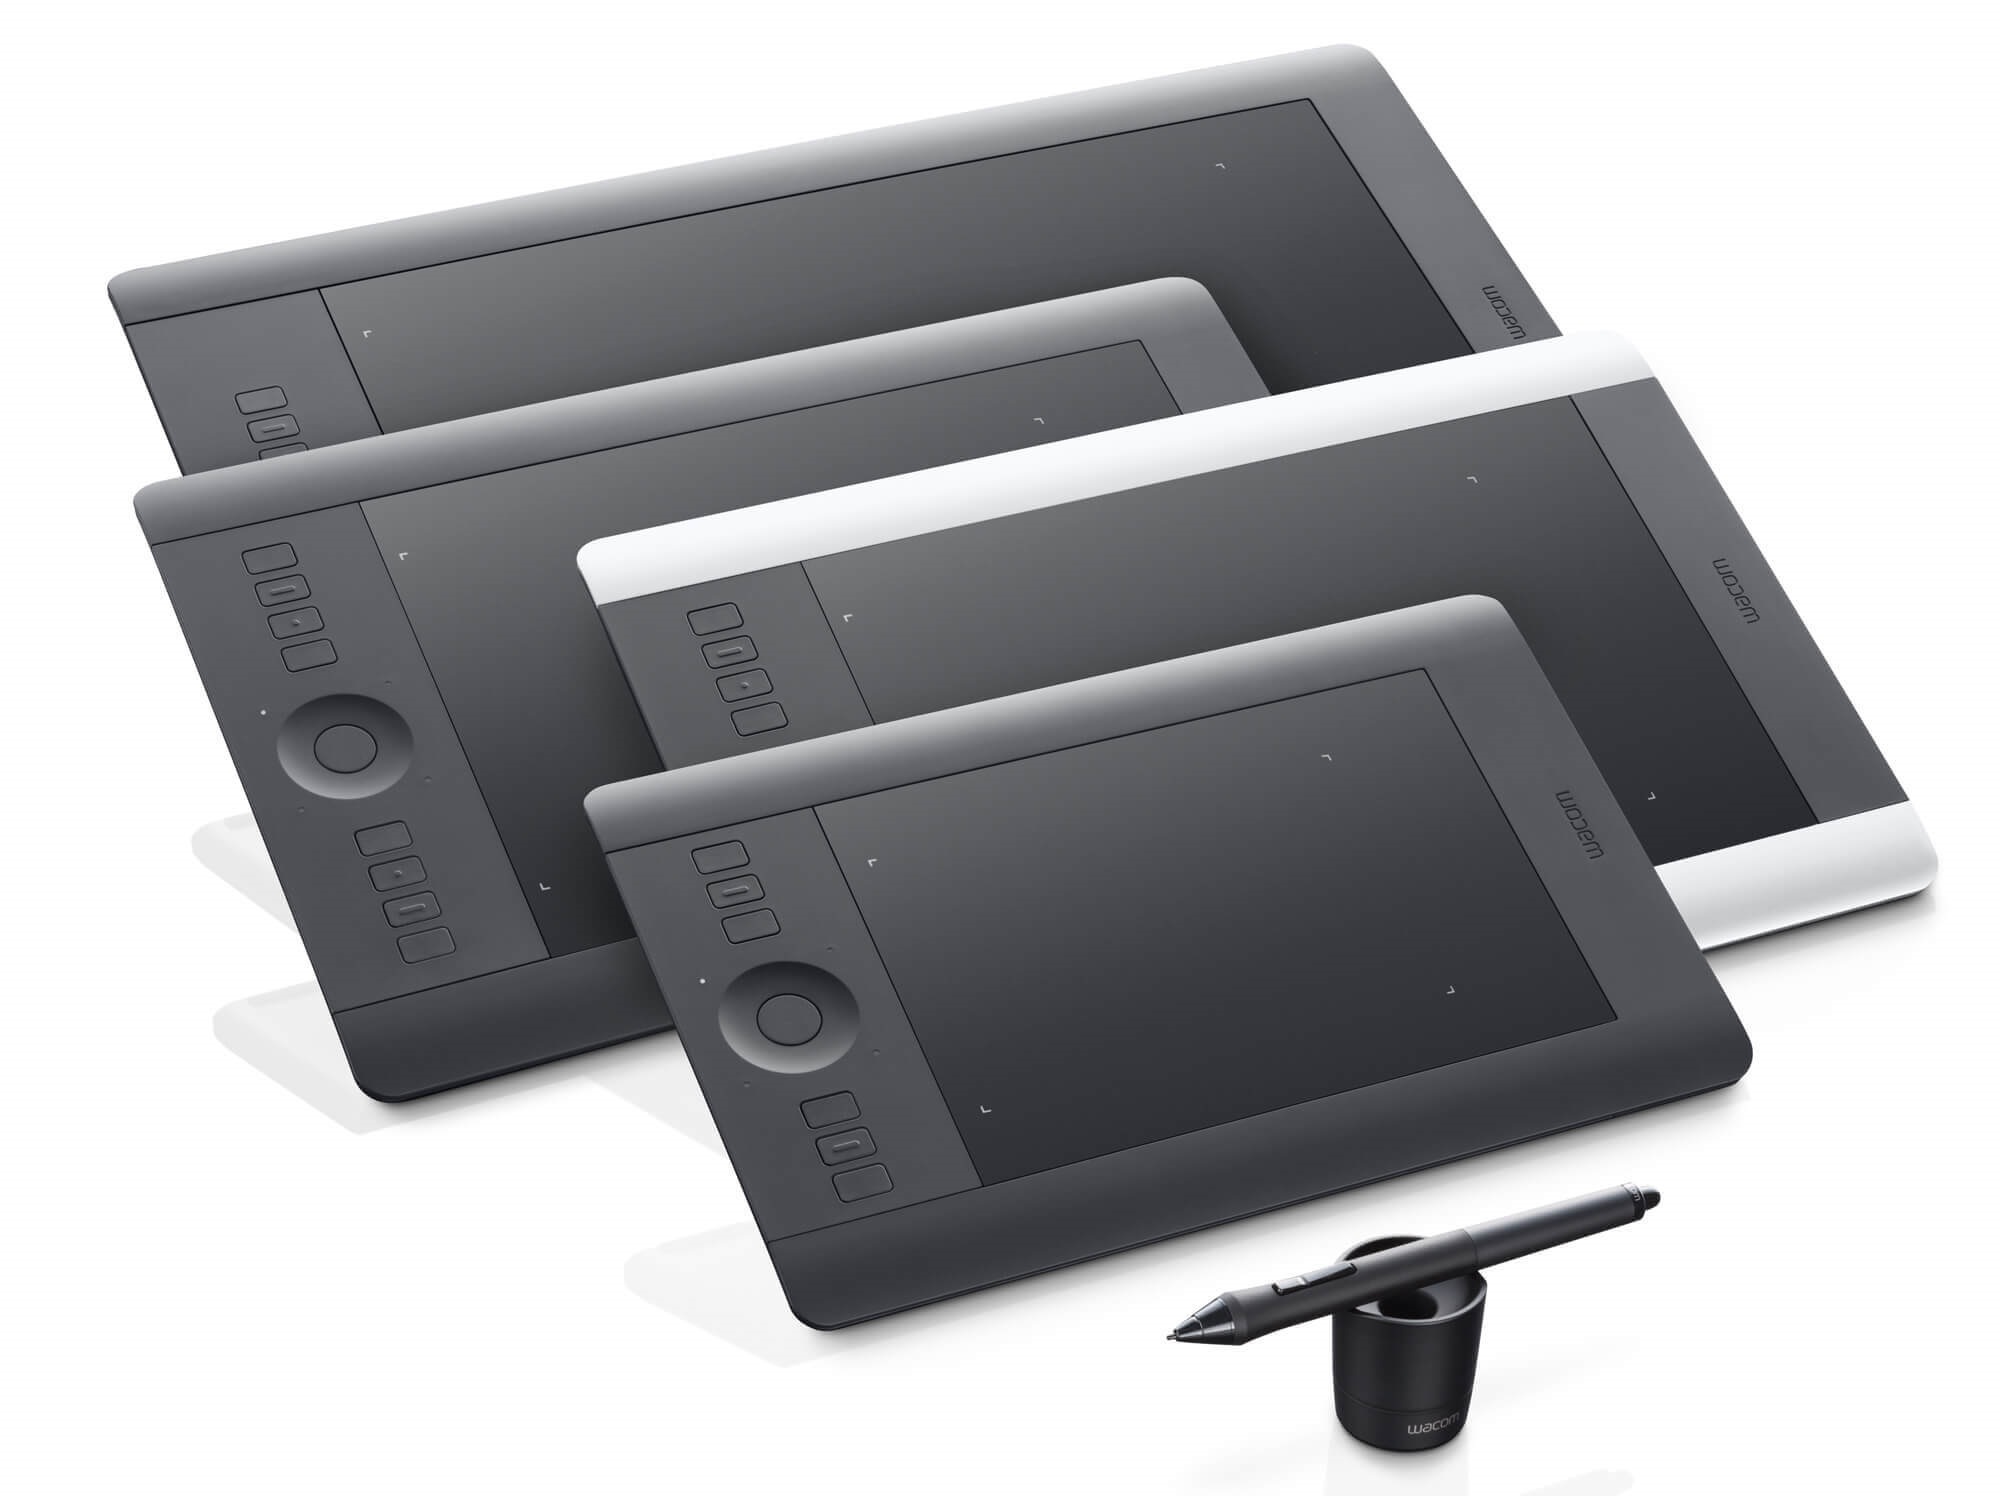 Grafický tablet včetně pera Grip Pen a náhradními hroty, 2048 úrovní přítlaku, rozlišení 5080lpi, ovládání také dotykem, Touch Ring, Precision Mode, rozměry 380 x 251 x 12 mm